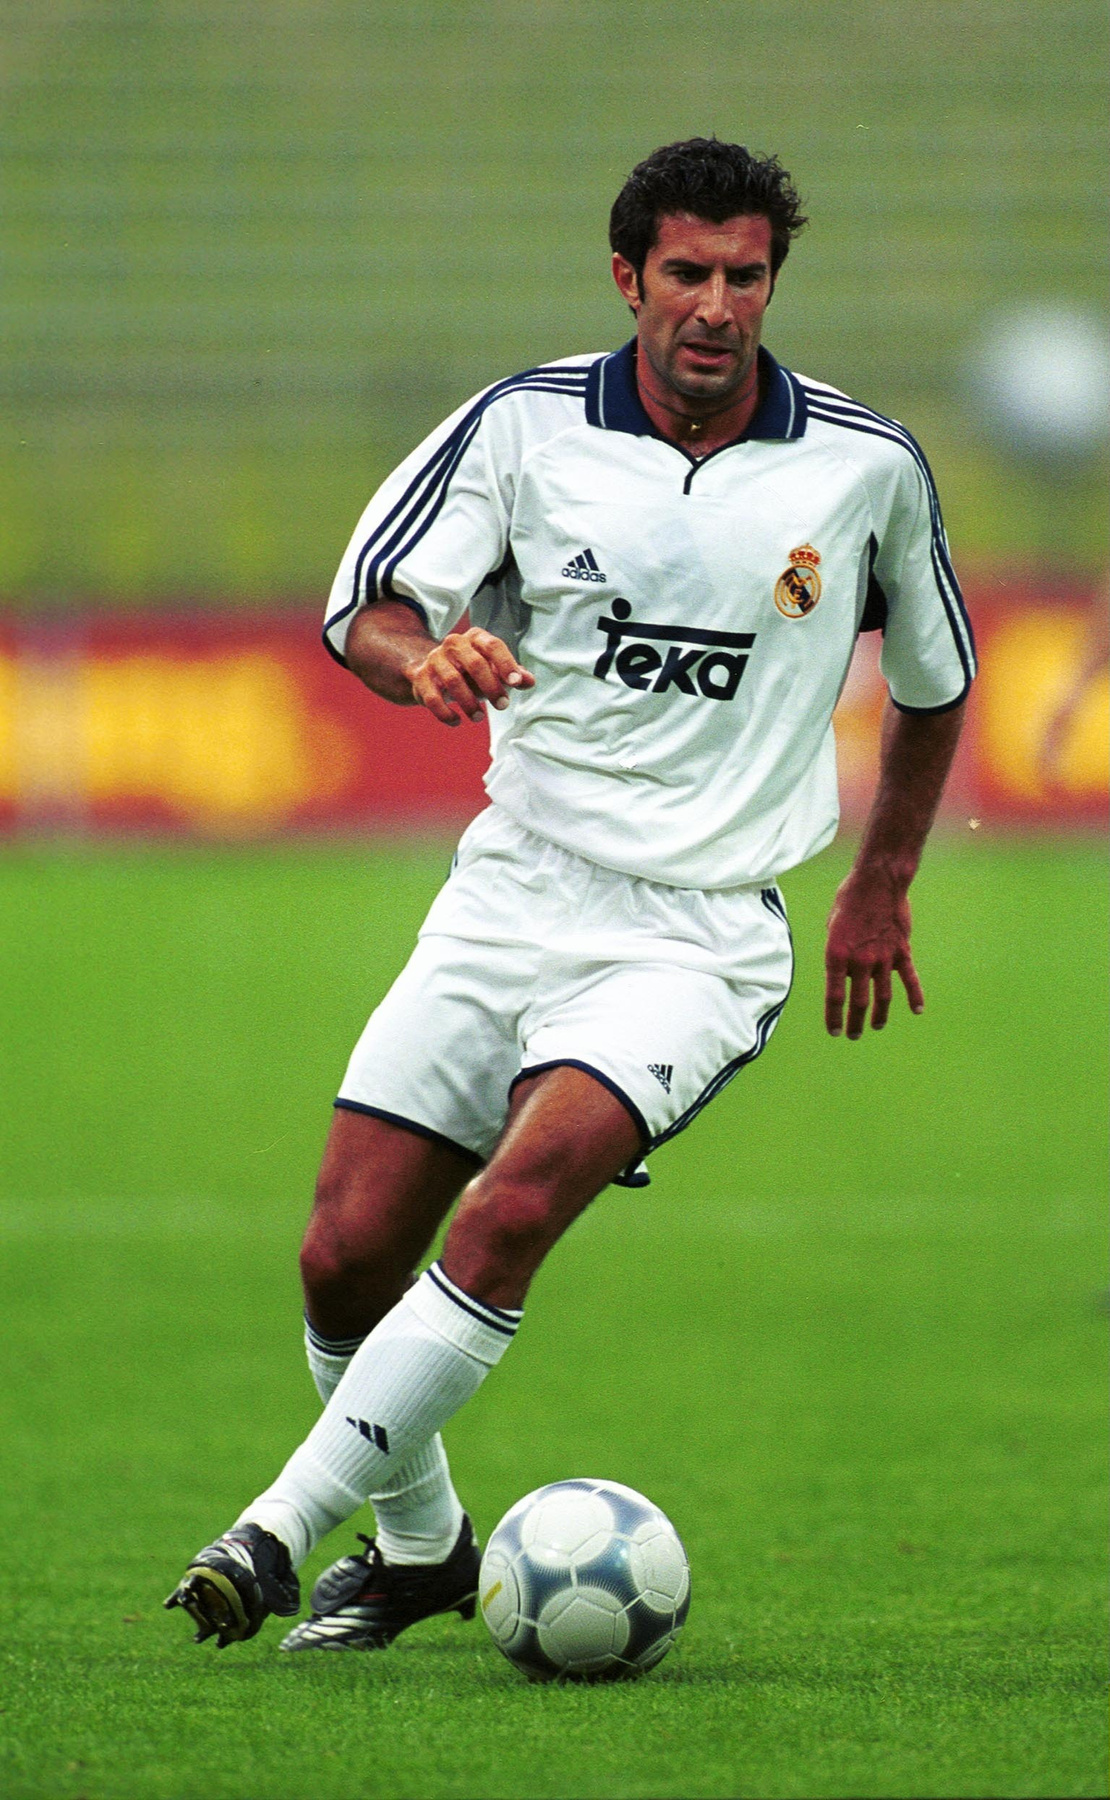 TEKA és Real Madrid, micsoda klasszikus! 1992 és 2001 között volt a konyhabútorgyár Raúlék mezszponzora, a képen látható Figo csak egy szezonon át viselhette a márkanevet a mezén.